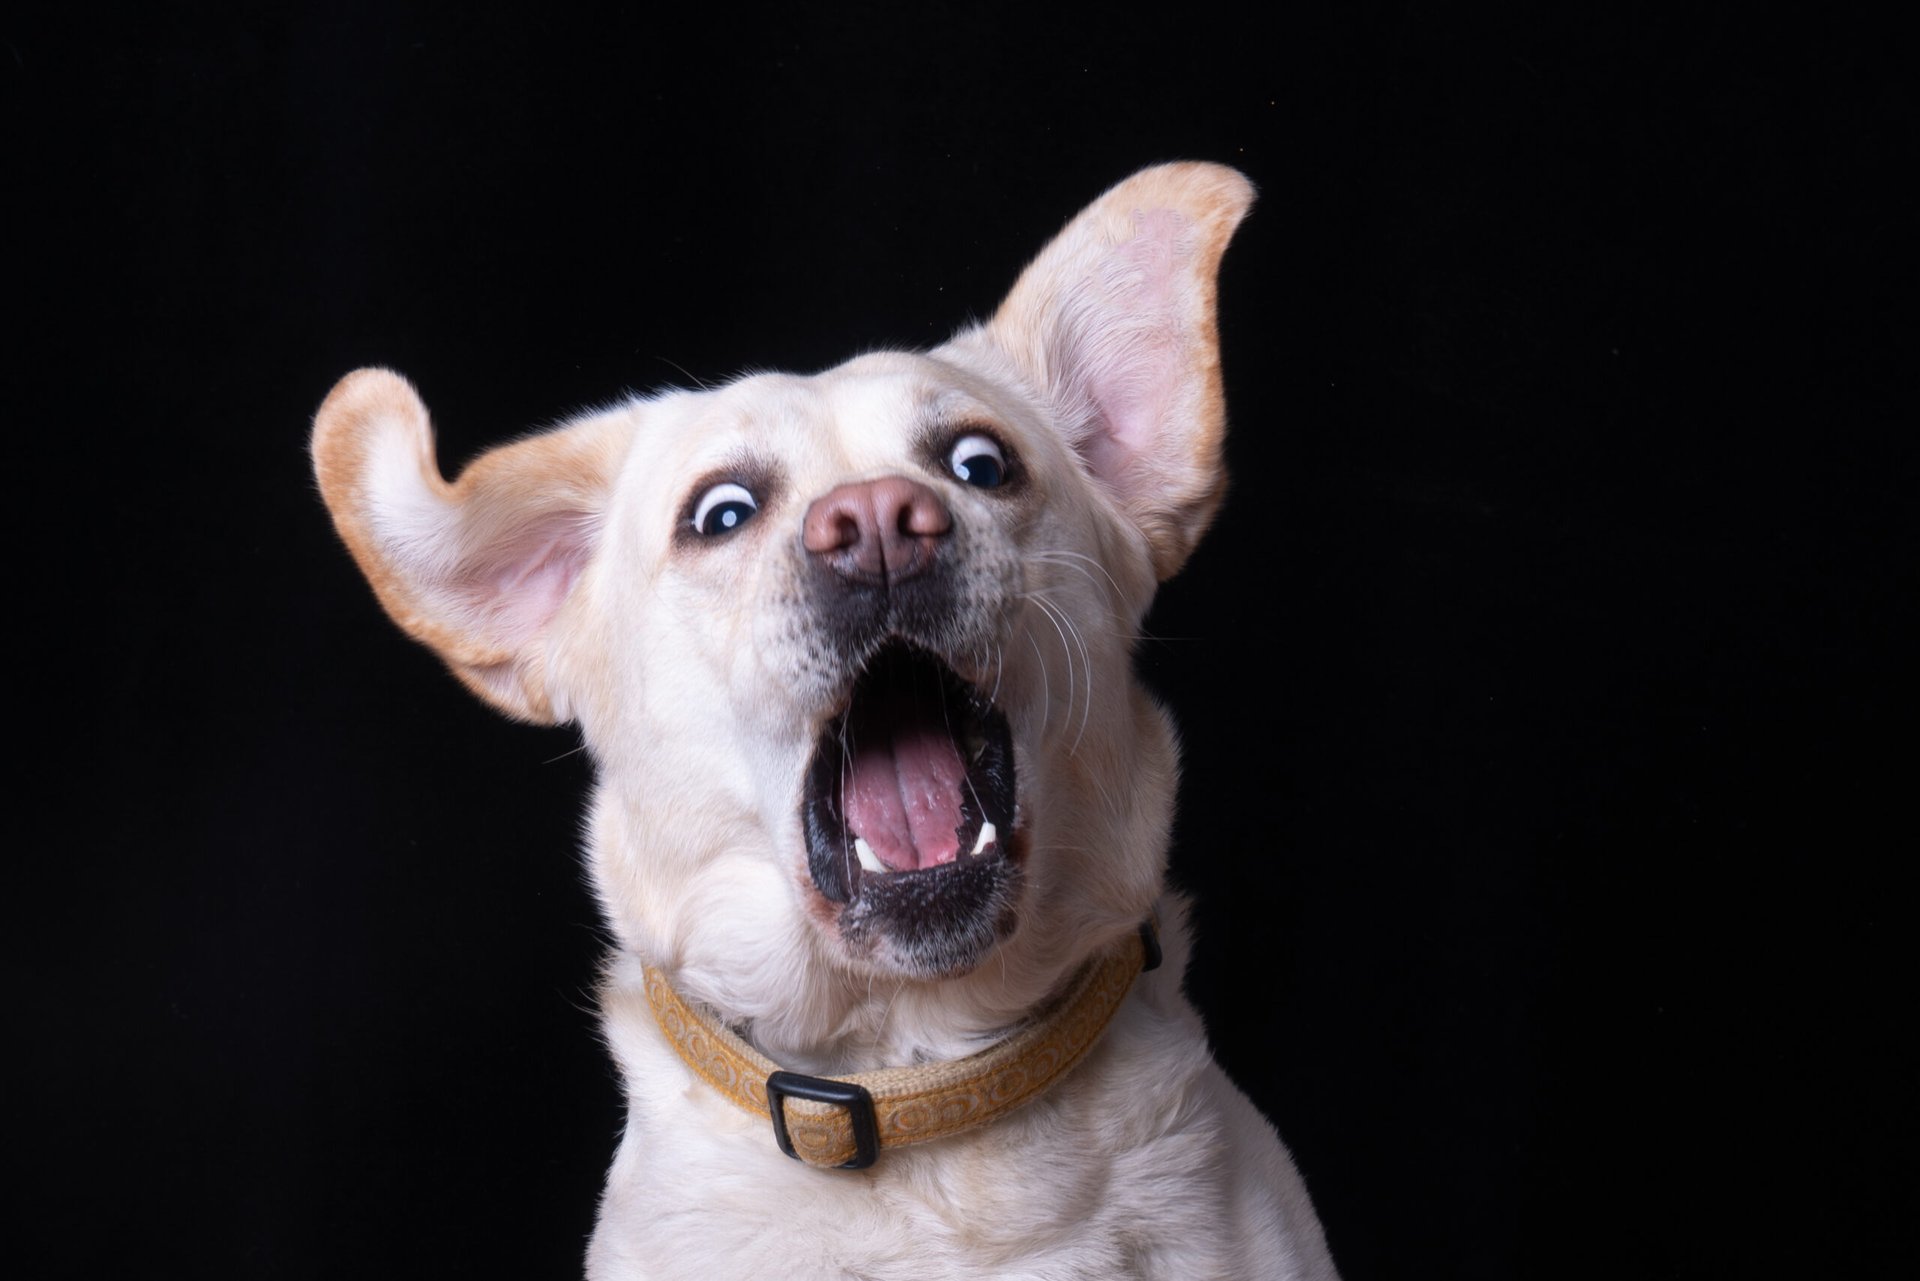 Startled or surprised dog